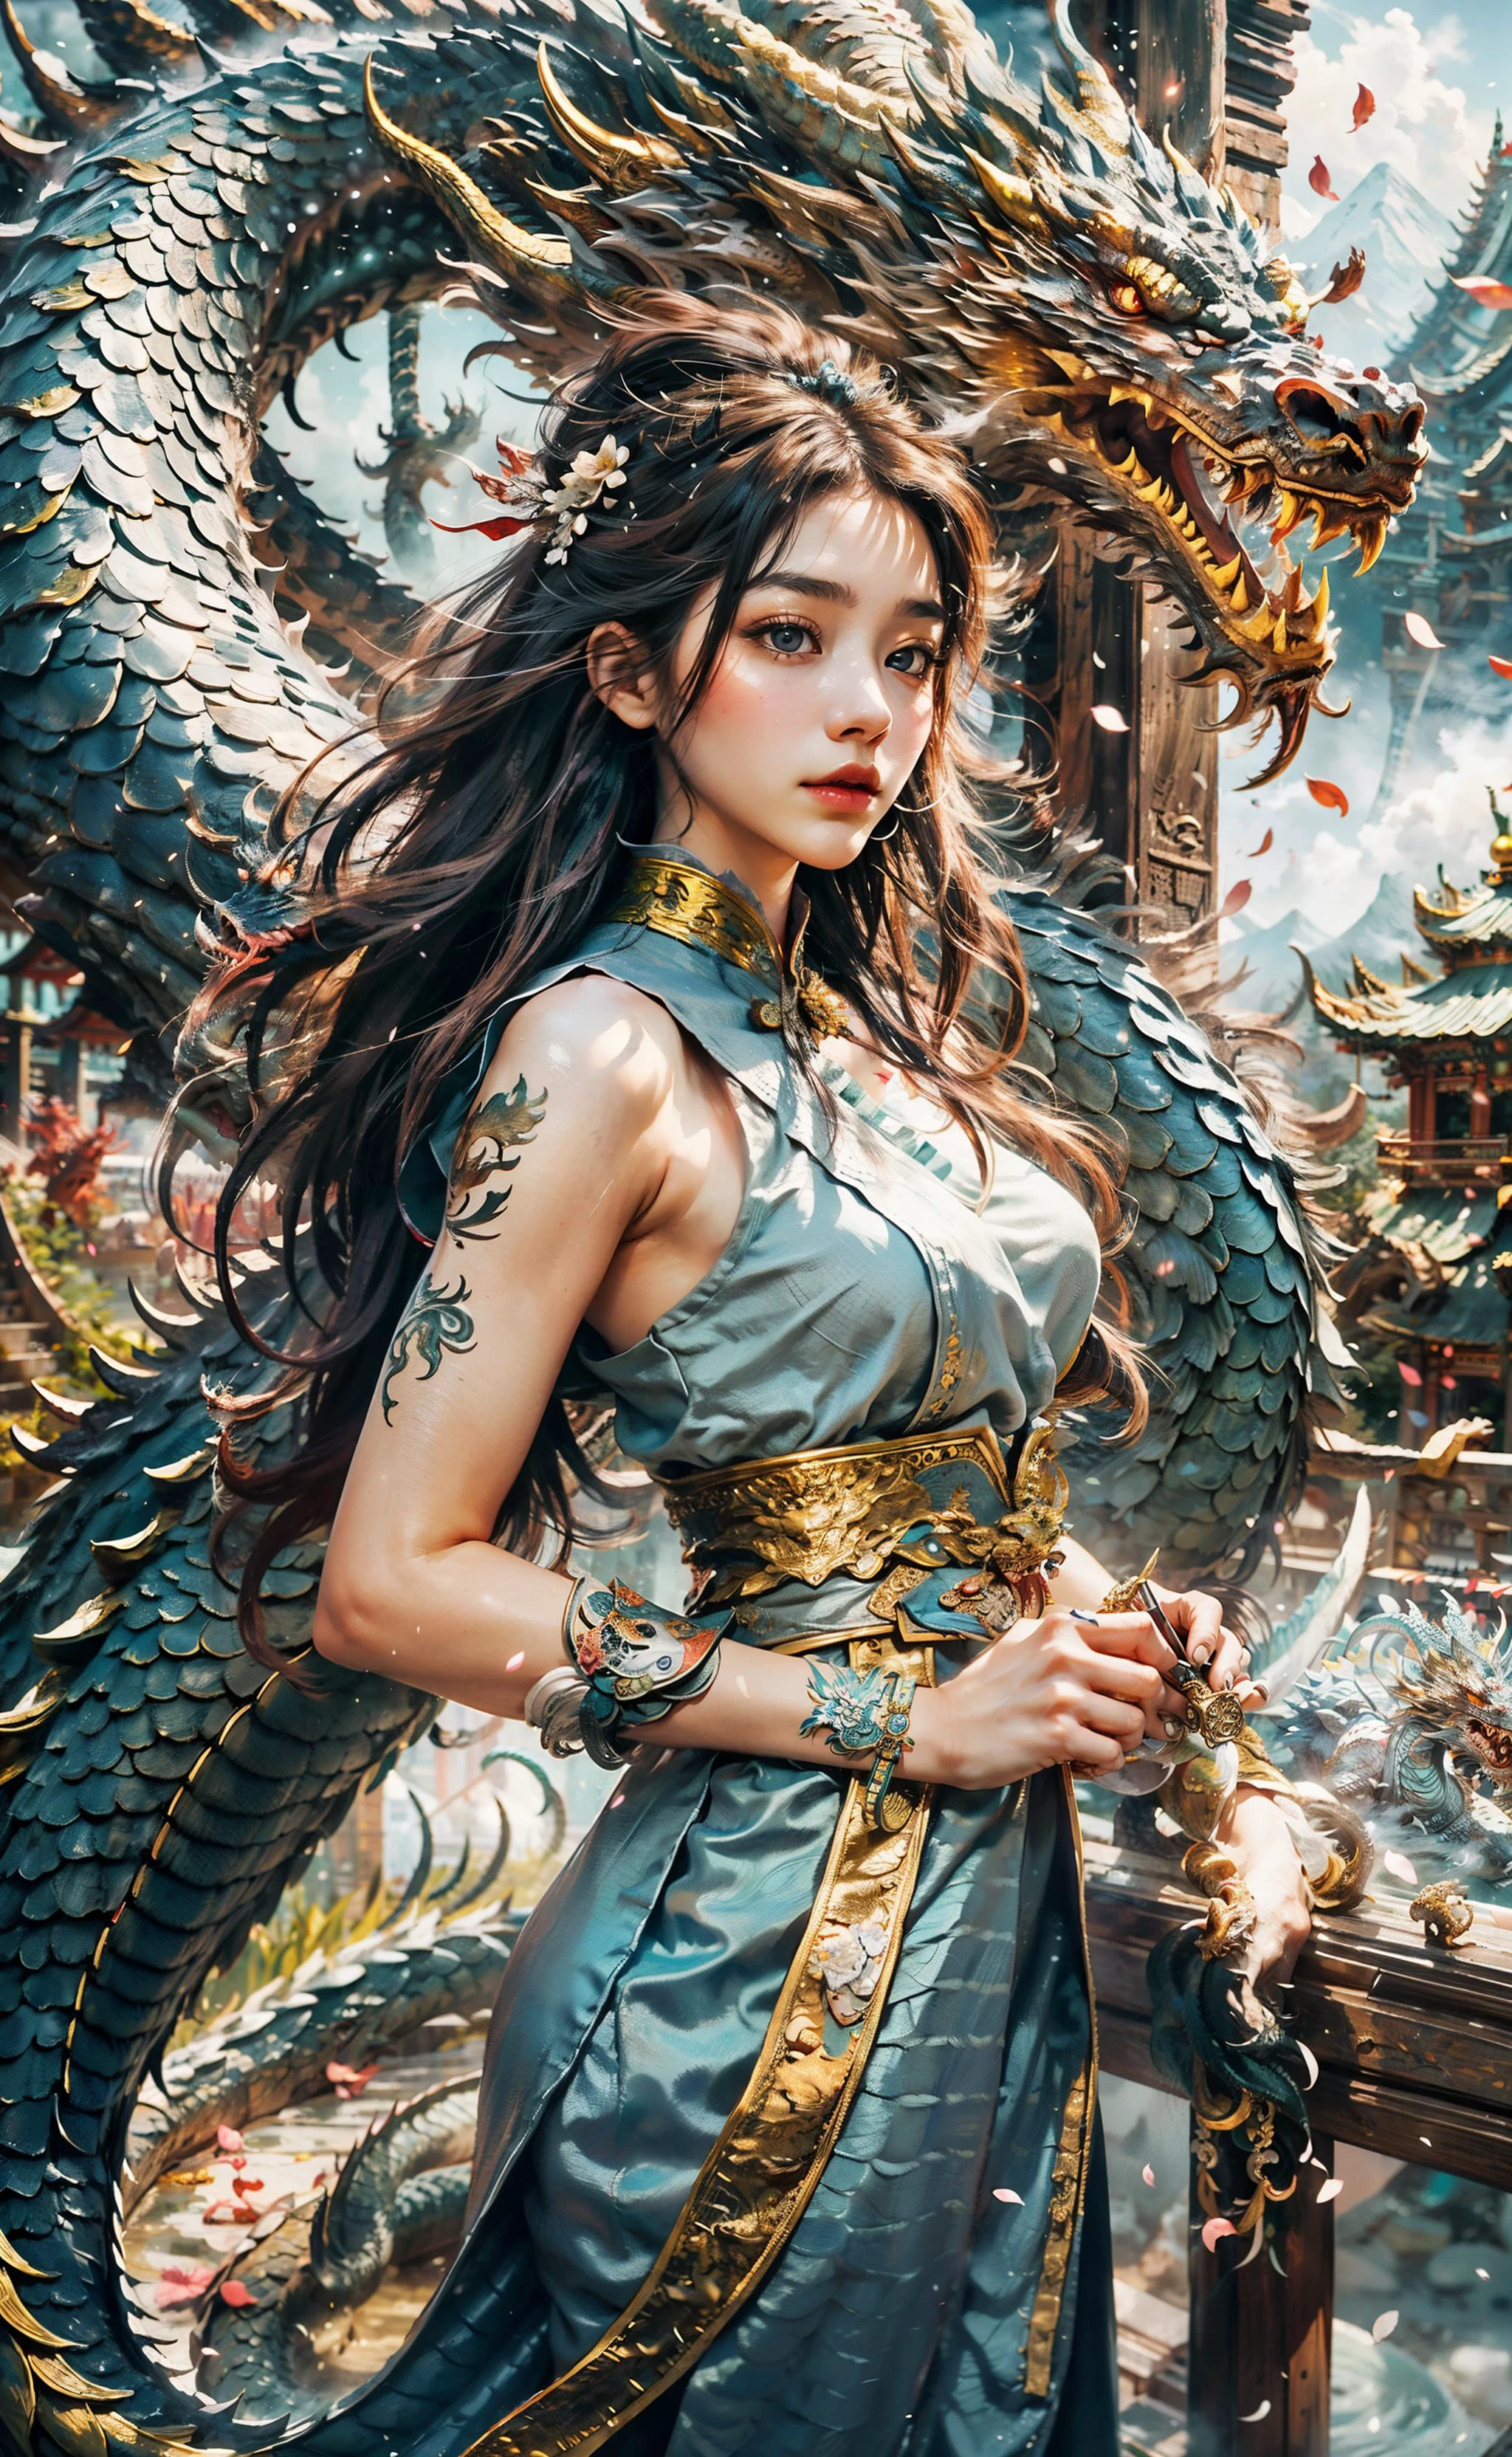 dragon_Réel, Long dragon de flamme, Dragon chinois, pattes, Corps serpentin, des yeux perçants, ((meilleure qualité)), ((chef-d&#39;œuvre)), ((réaliste)), ((Jeune fille de 18 ans en vêtements chinois, cheveux flottants ornés d&#39;un bel ornement de cheveux, debout au milieu de pétales de fleurs volantes avec un dragon majestueux enroulé autour d&#39;elle)), Modèle de coupe de cheveux par Choppy Layers, possed est debout dans la pose de la porte, gris-bleu vif,  l&#39;angle de prise de vue est une vue à vol d&#39;oiseau,
Laissez-vous fasciner par le spectacle enchanteur d&#39;une jeune fille de 18 ans vêtue d&#39;une élégante tenue chinoise, ses cheveux flottants gracieusement agrémentés d&#39;un ornement de cheveux captivant. Alors que les pétales de fleurs se balancent dans le vent autour d&#39;elle, a majestic dragon wraps its Corps serpentin around her, créer une scène d&#39;allure mythique. Immergé dans la rivière de jungle la plus profonde d&#39;un village de forêt tropicale, la verdure luxuriante et la flore vibrante les entourent. Des runes ornent le paysage, imprégnant un air de mysticisme ancien. Le duo se tient au sommet d&#39;une montagne couverte de brume, où les sommets enneigés atteignent le ciel. Une lumière douce illumine le visage de la jeune fille, projetant des ombres douces et capturant sa beauté éthérée. Le bokeh et les néons lointains ajoutent une touche de magie de loin, créer une ambiance onirique. L&#39;arrière-plan flou améliore encore la qualité cinématographique, attirant l&#39;attention sur la composition splendide et hyper détaillée. Prepare to be captivated by the seamless blend of natural elements and fantasy in this artistic chef-d&#39;œuvre.